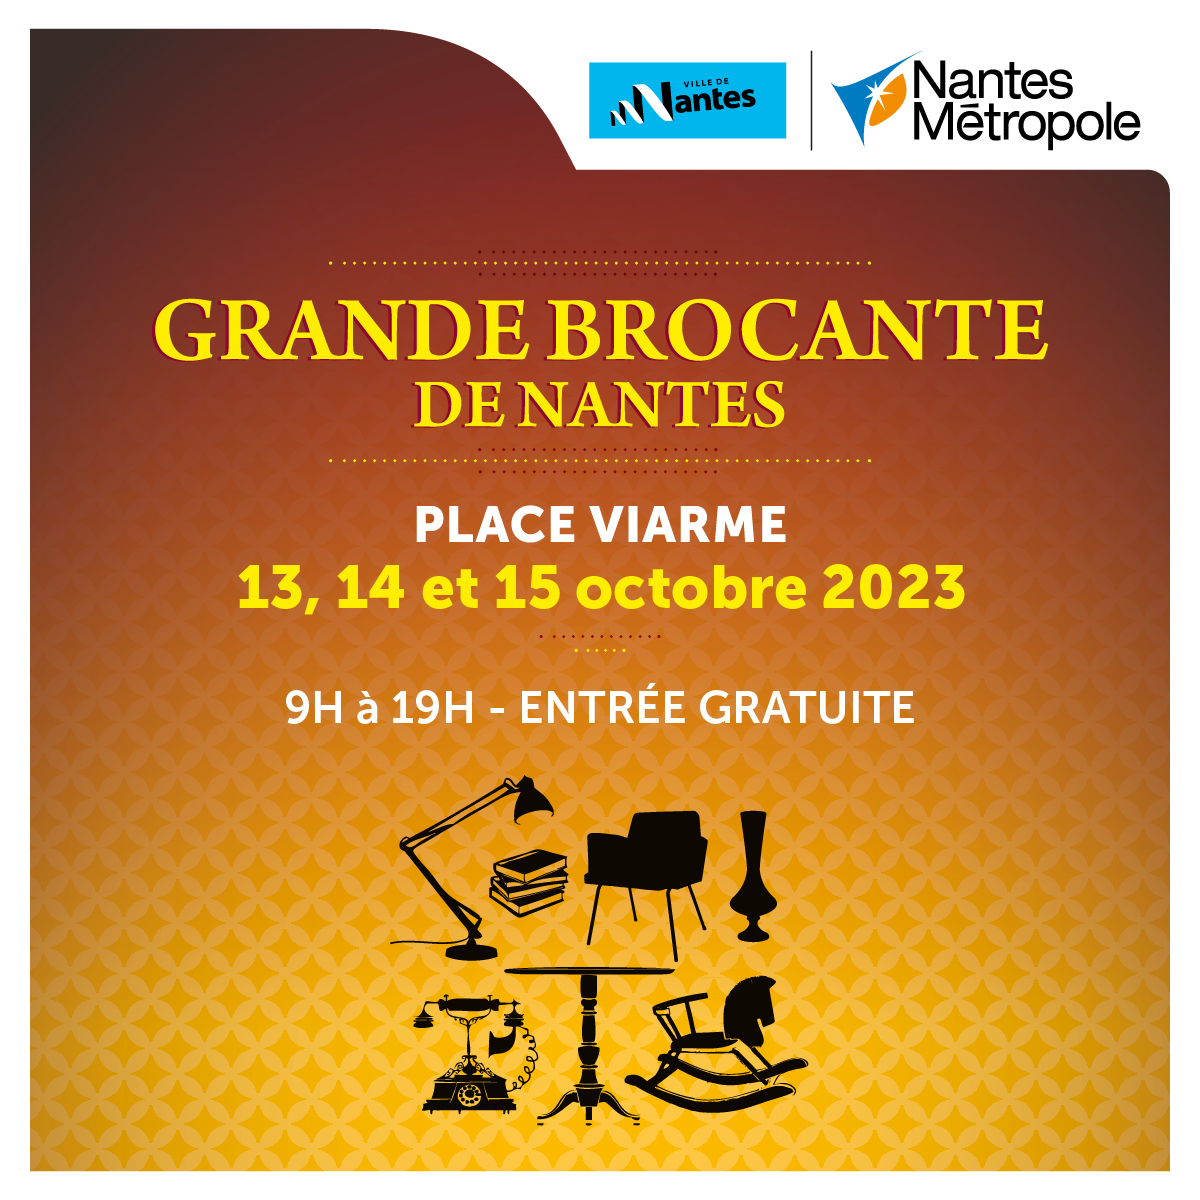 RDV Grande Brocante de Viarme Nantes 13/14/15 octobre 2023